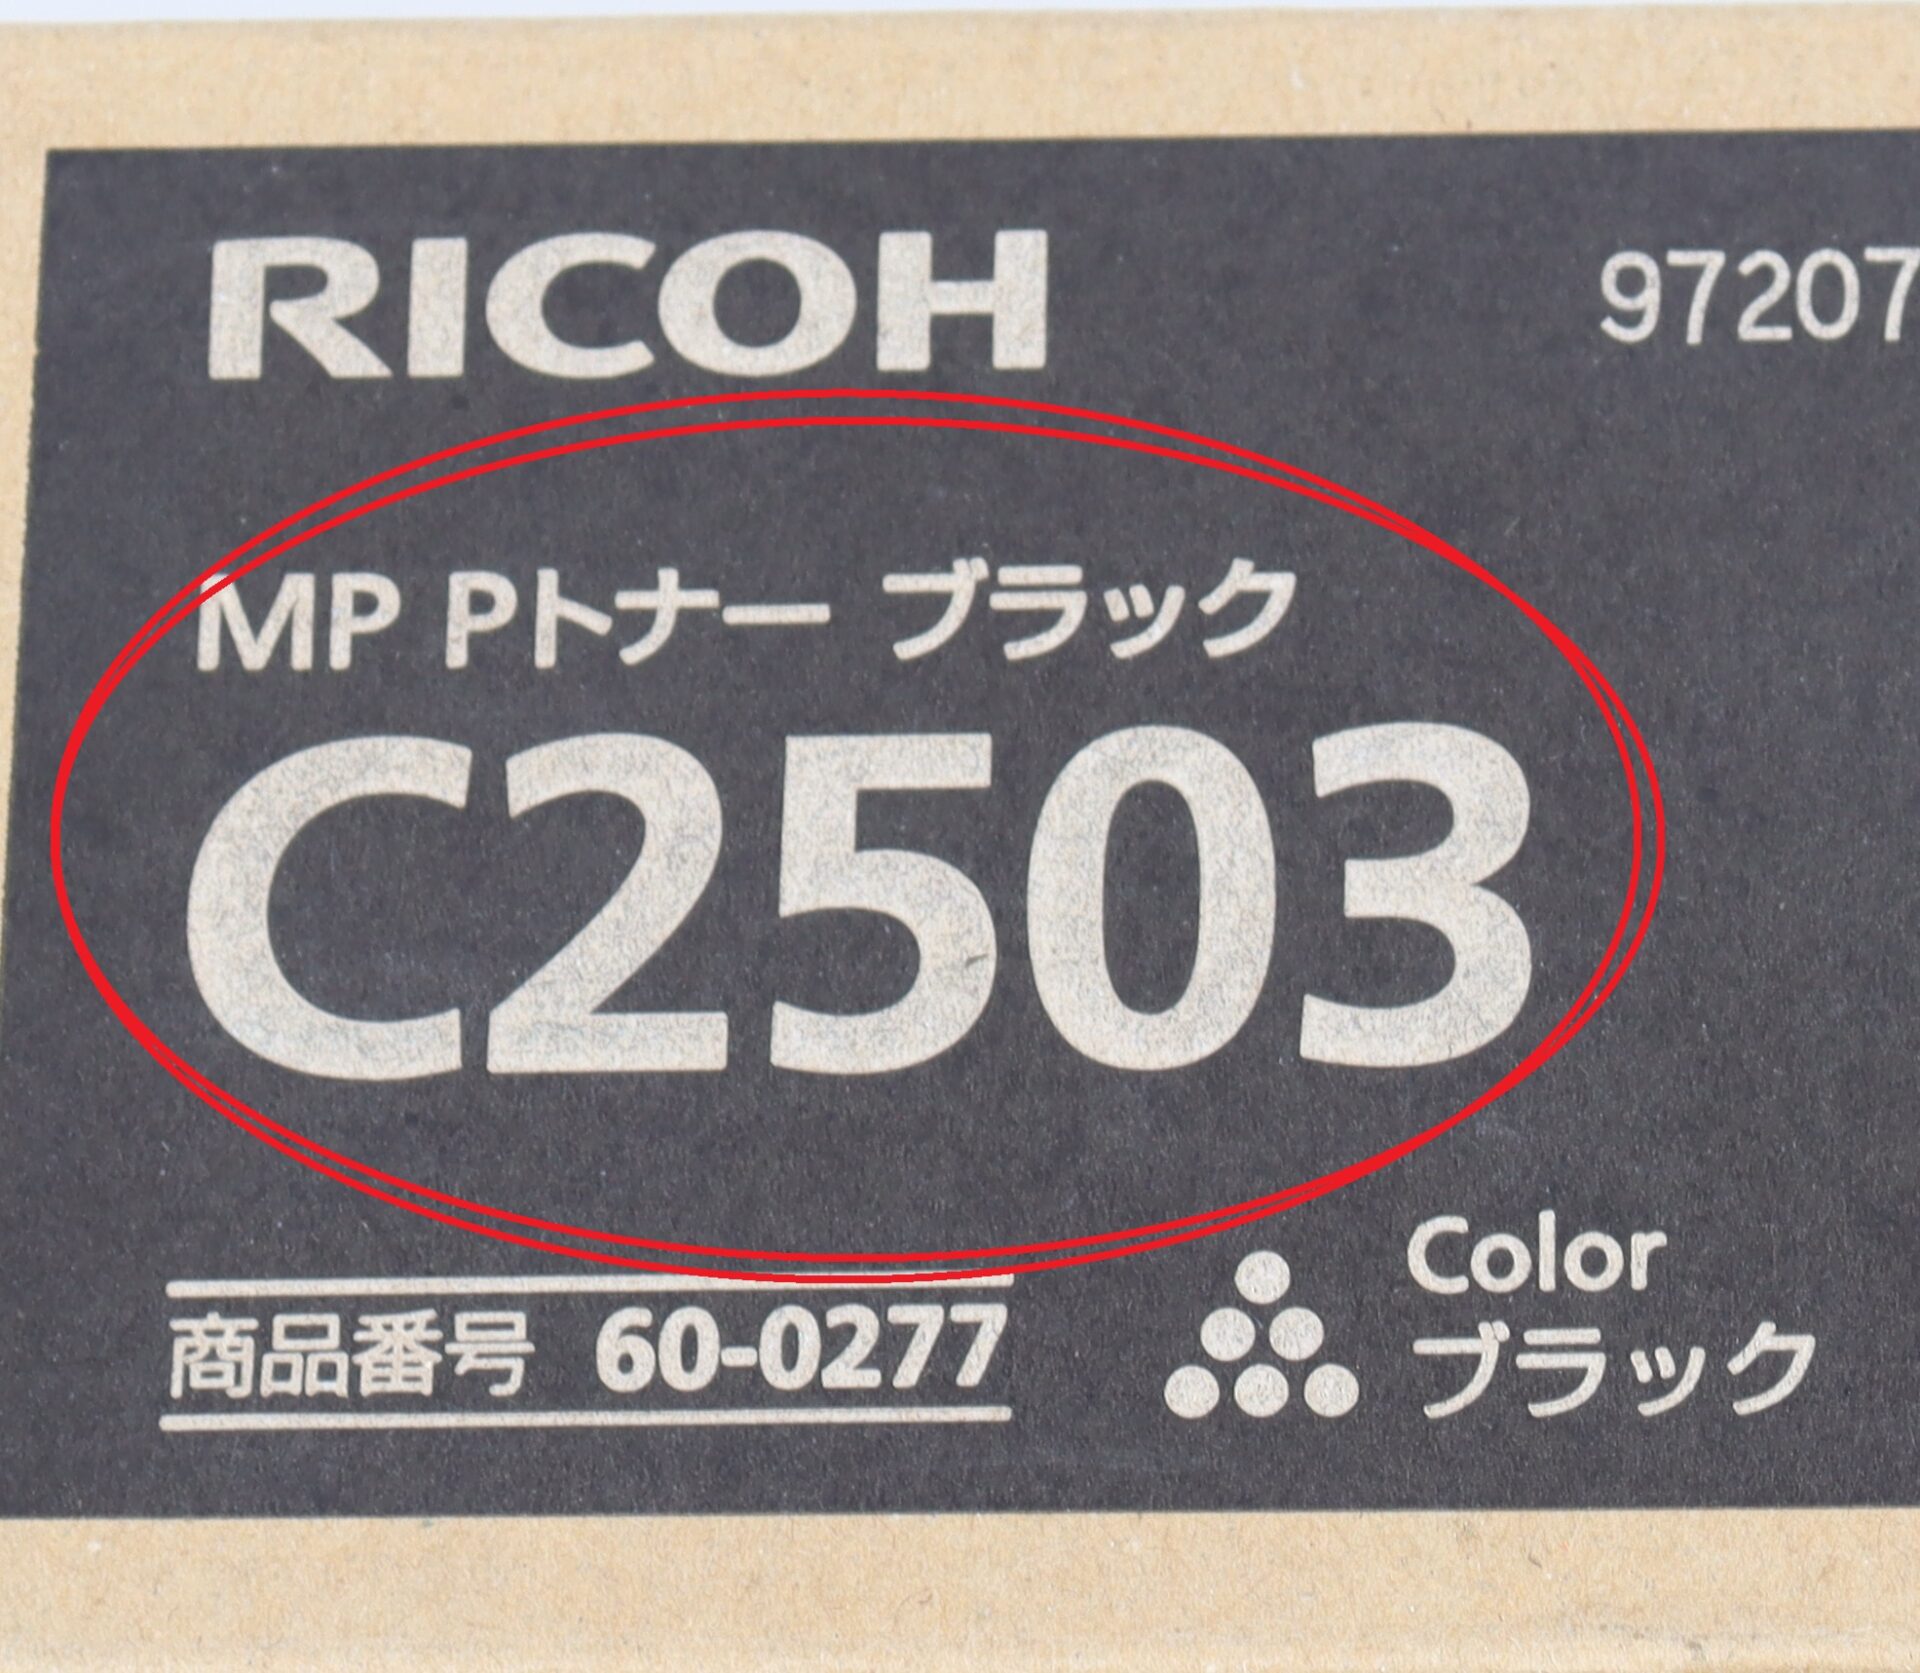 RICOH MP Pトナー C2503 ブラック